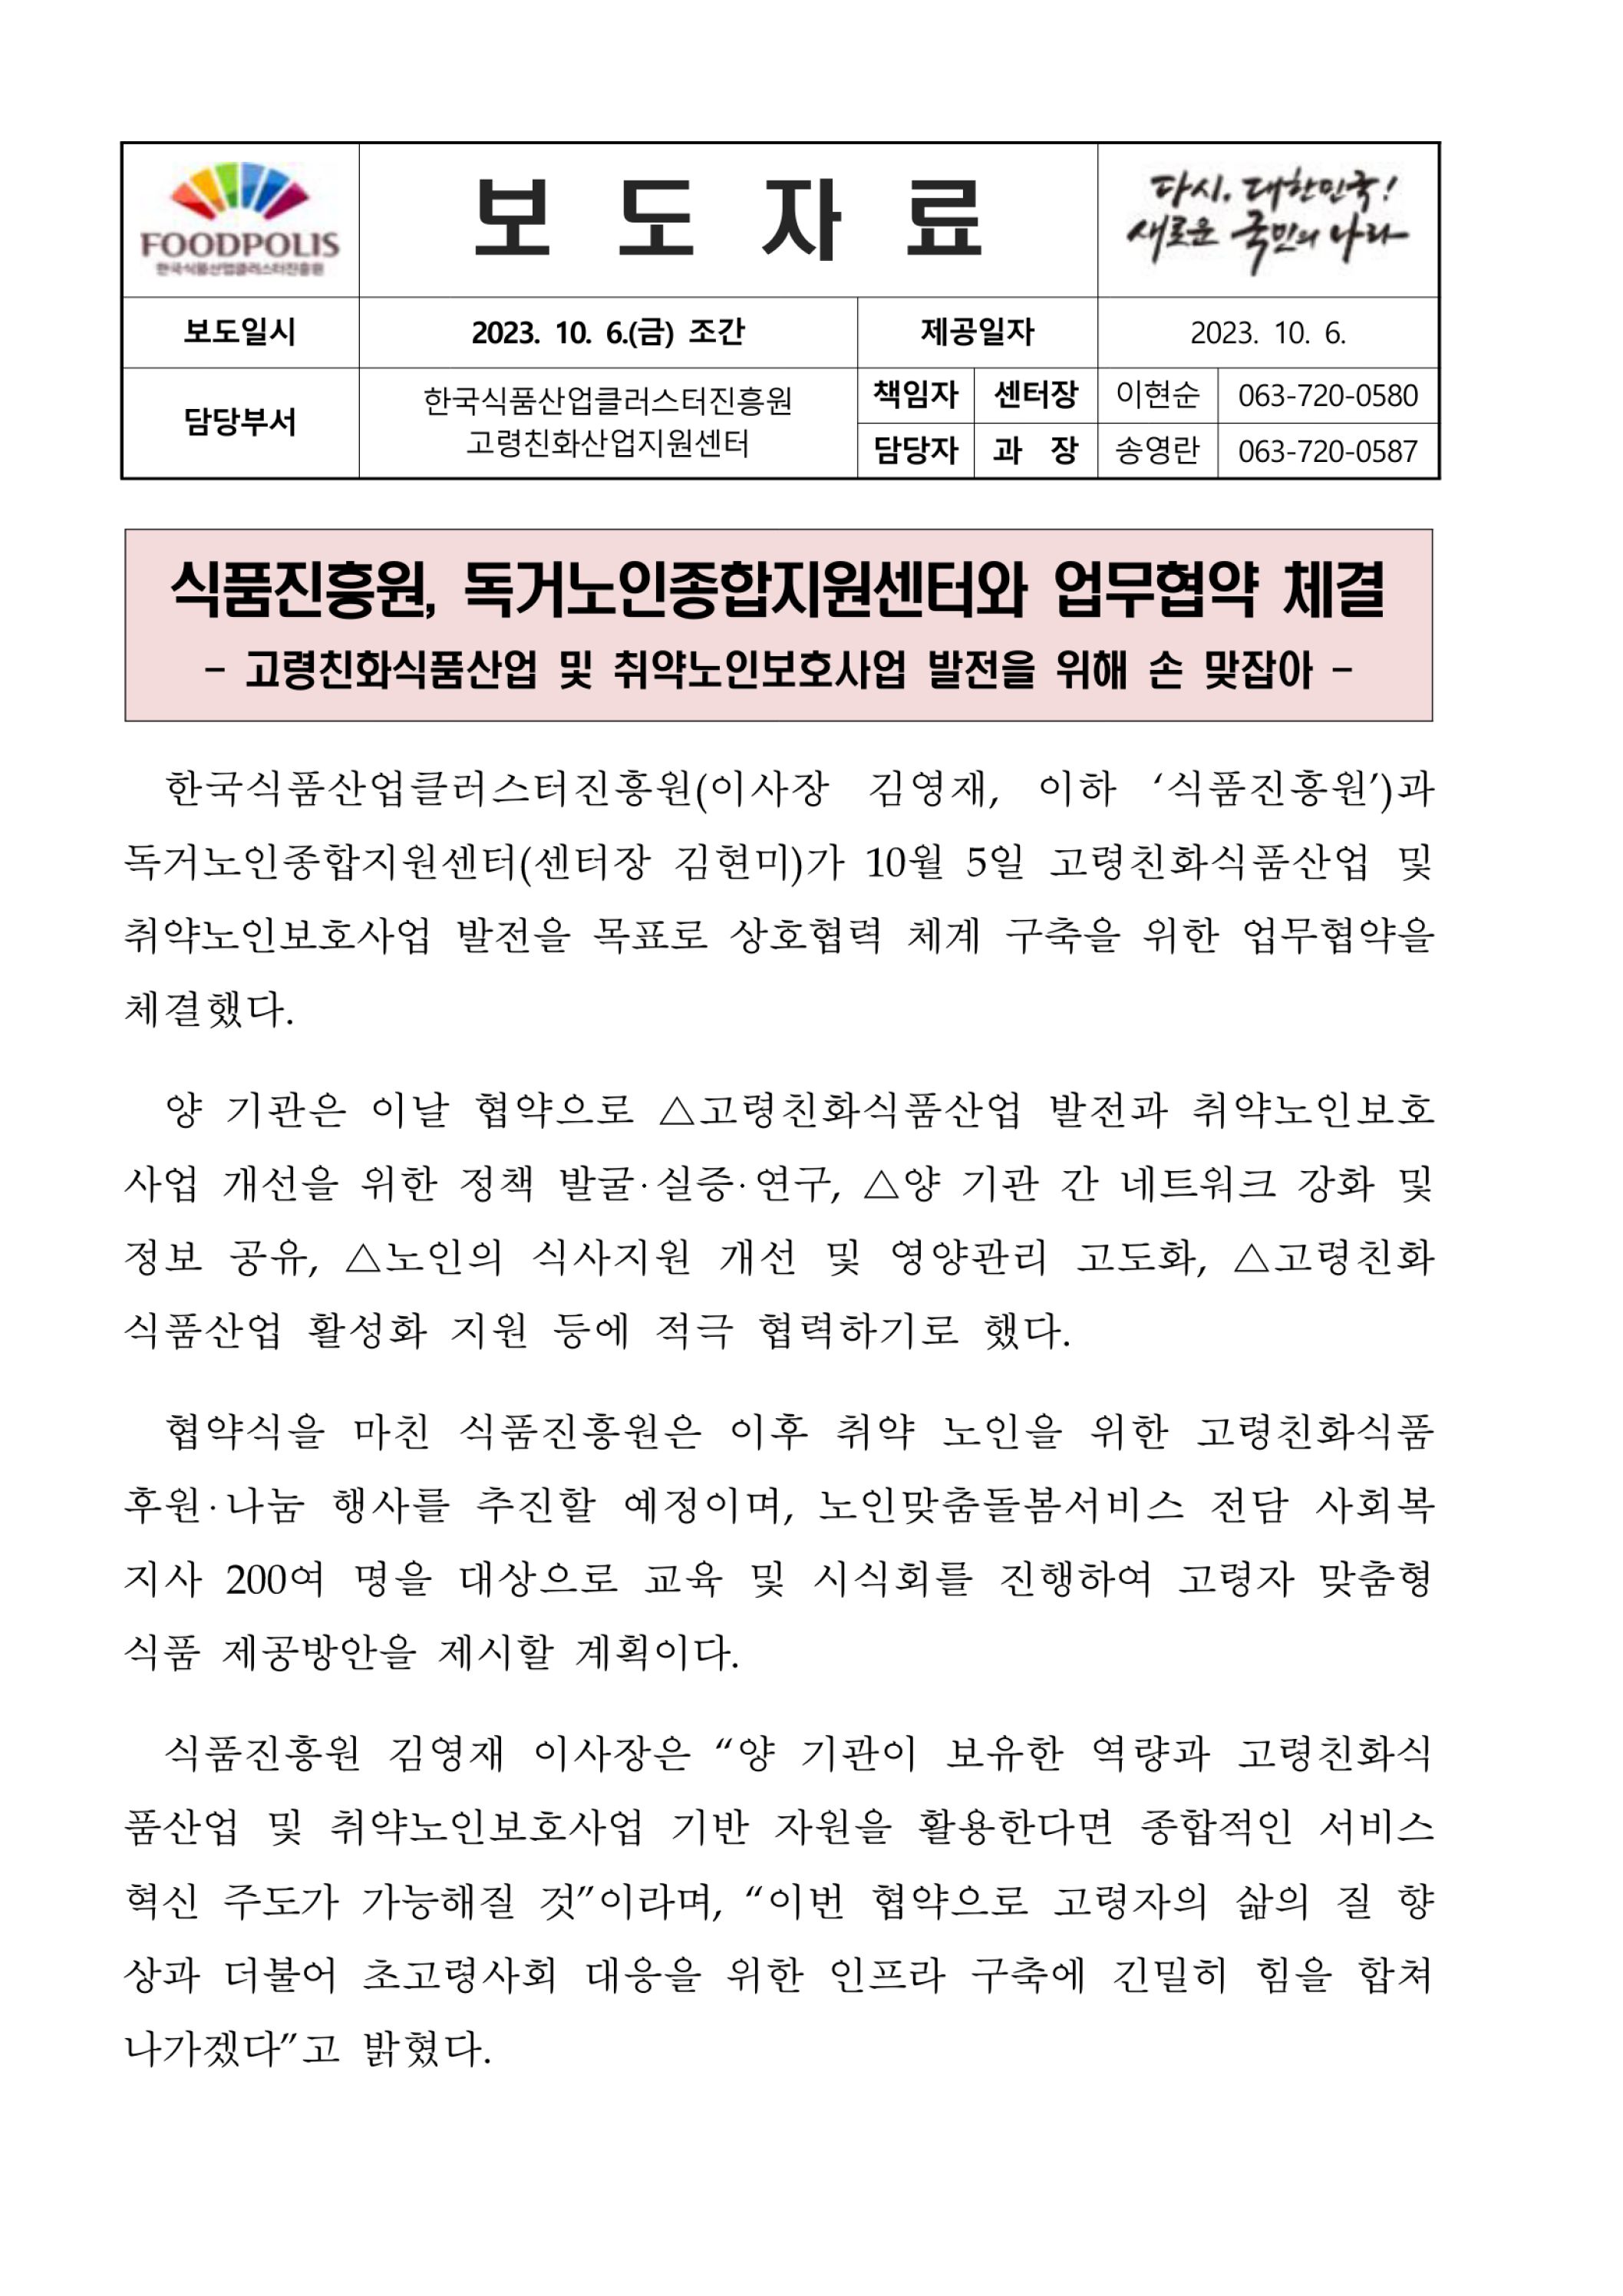 식품진흥원, 독거노인종합지원센터와 업무협약 체결 - 자세한 내용은 첨부파일에서 확인